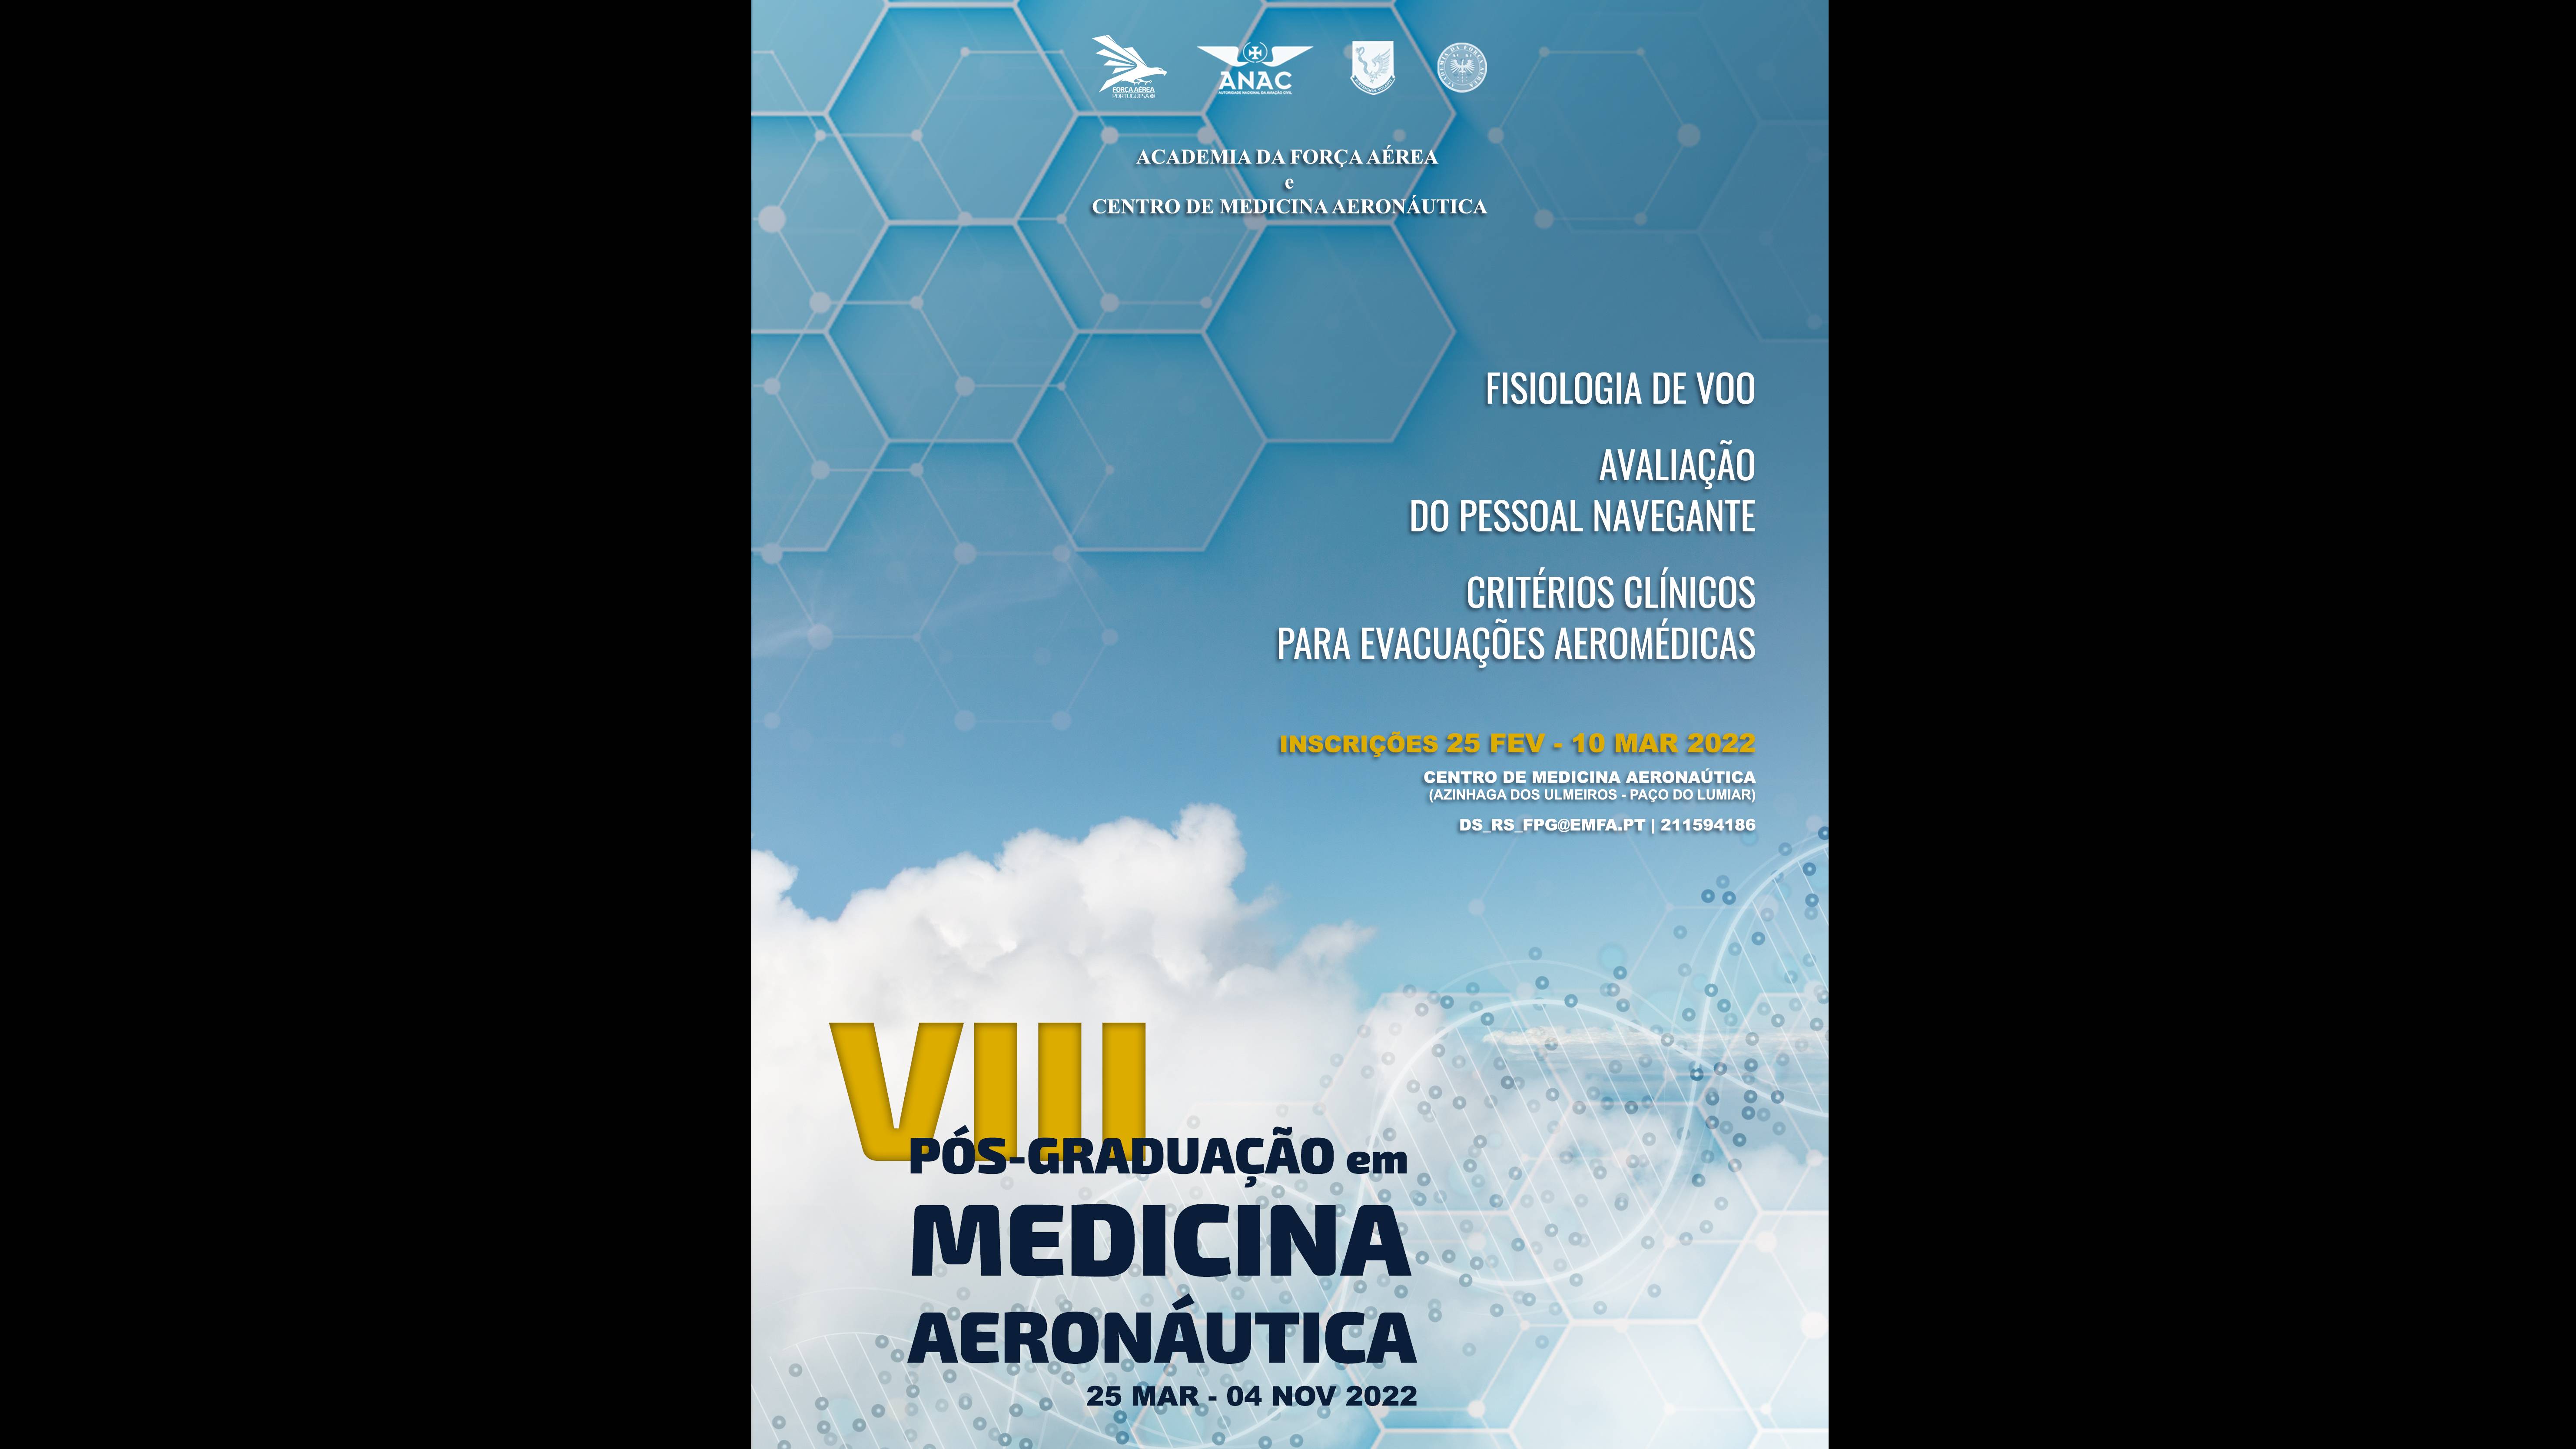 VIII curso de Pós-Graduação em Medicina Aeronáutica da Academia da Força Aérea